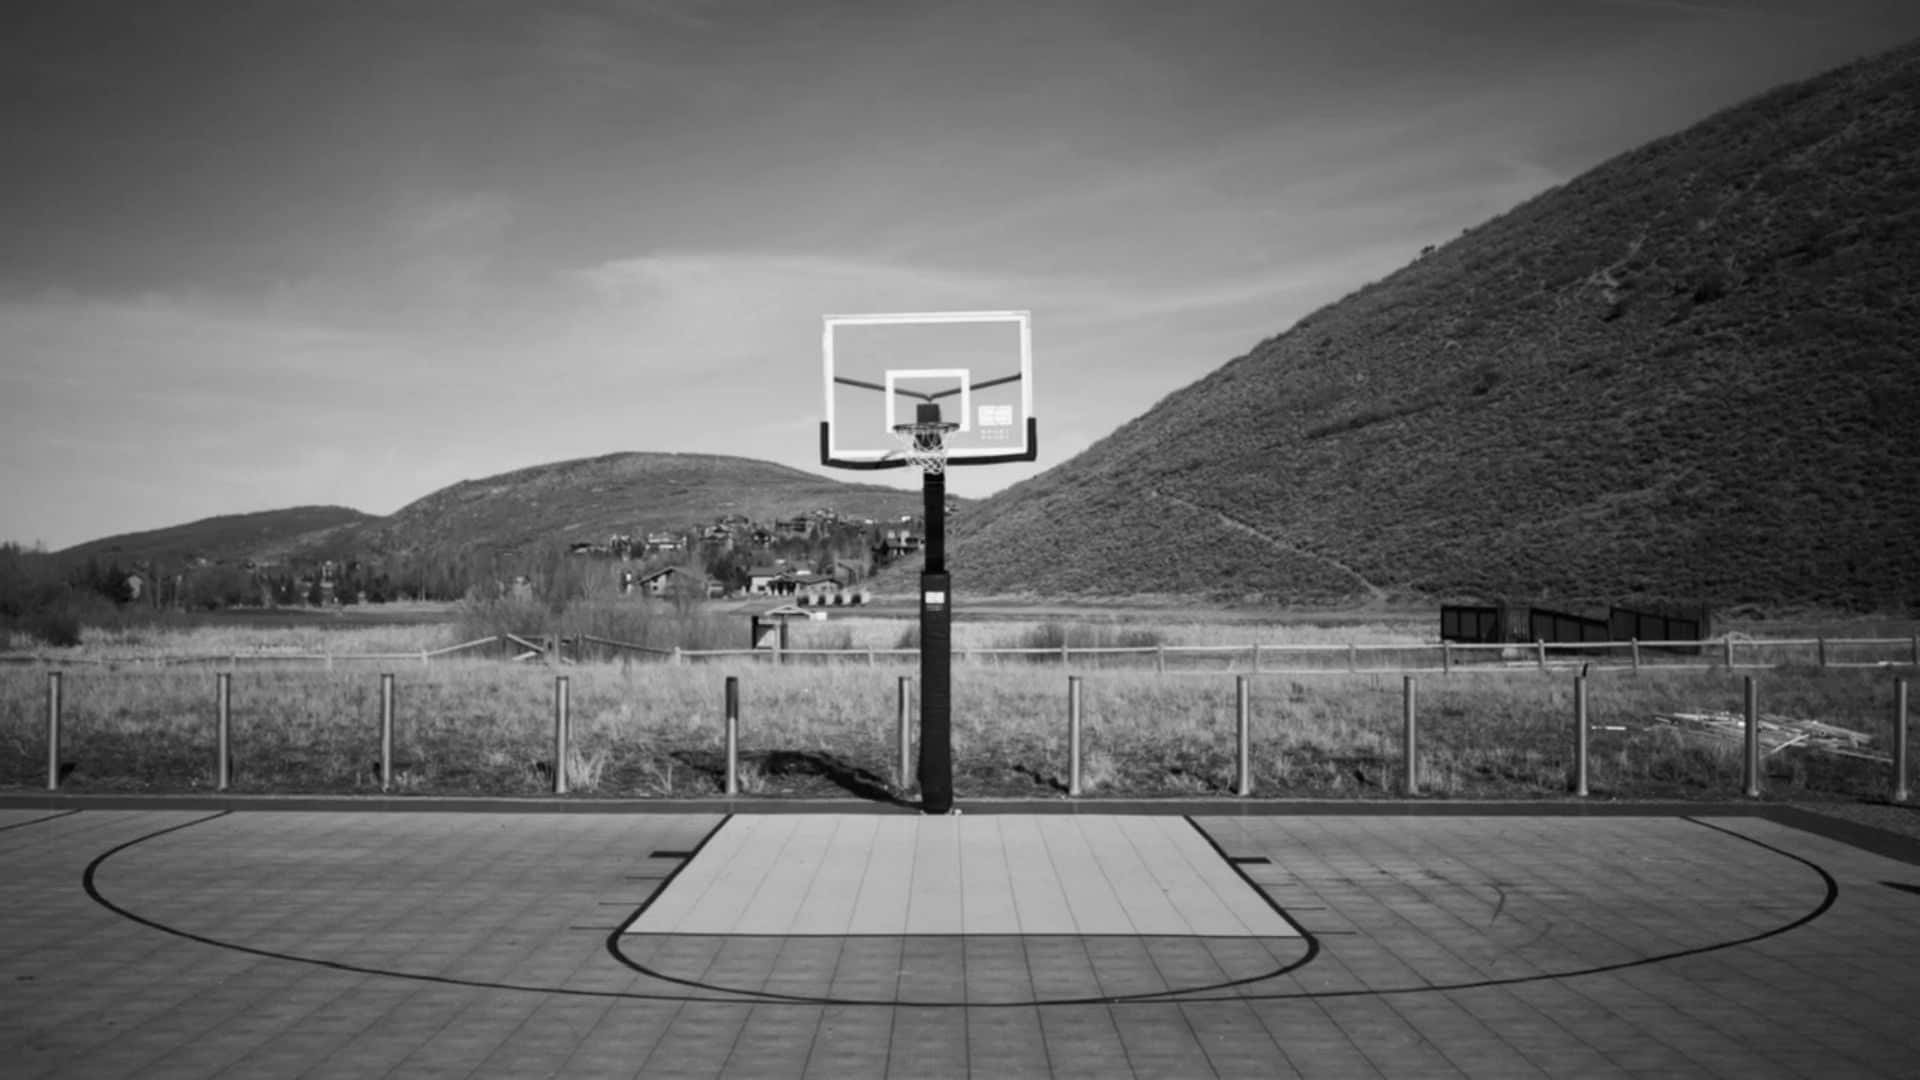 Einblick Auf Einen Frisch Gestrichenen Basketballplatz, Der Spieler Aus Der Ganzen Welt Einlädt.